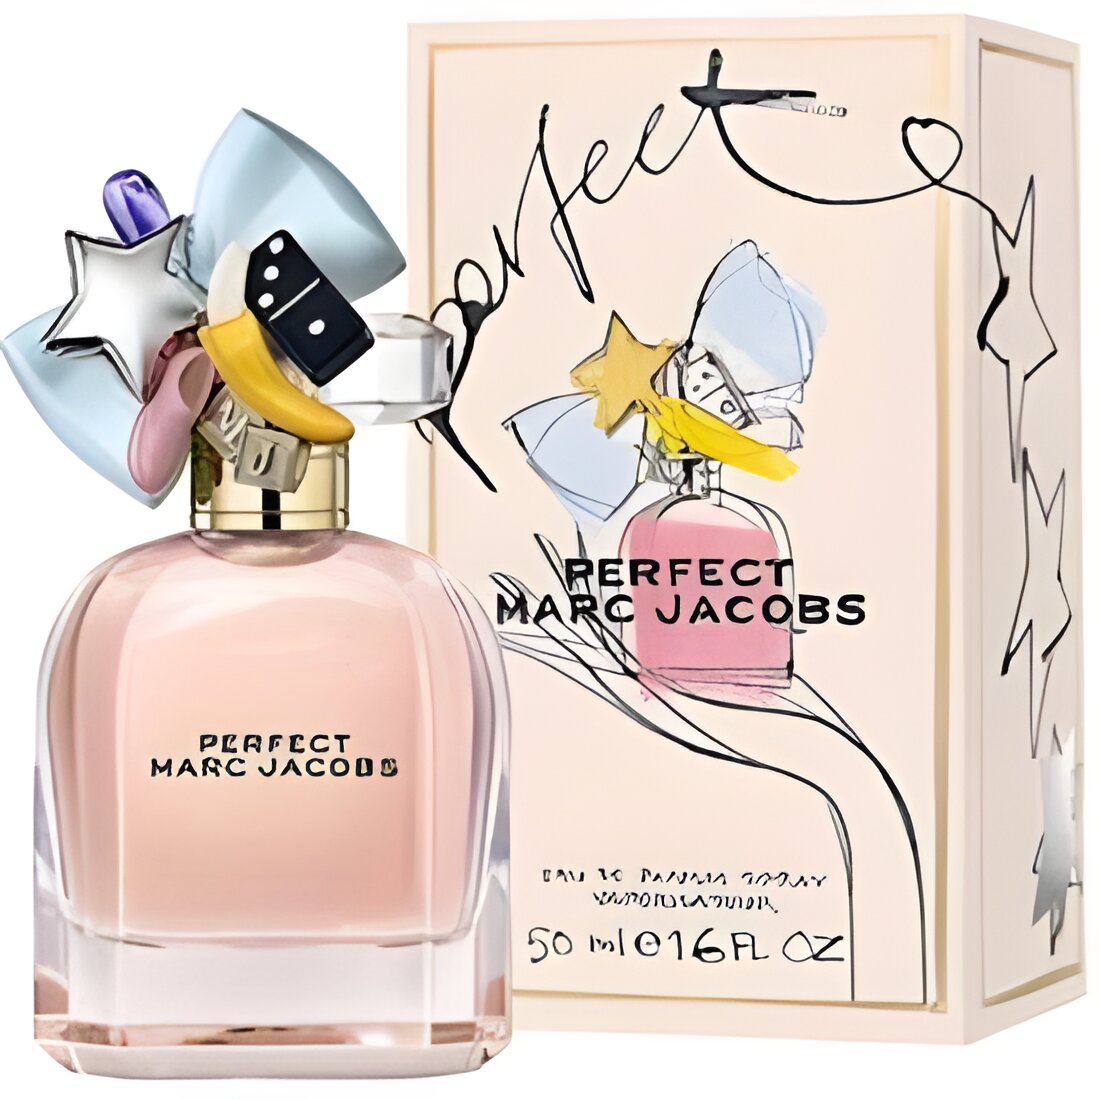 Free Perfect Marc Jacobs Eau de Parfum